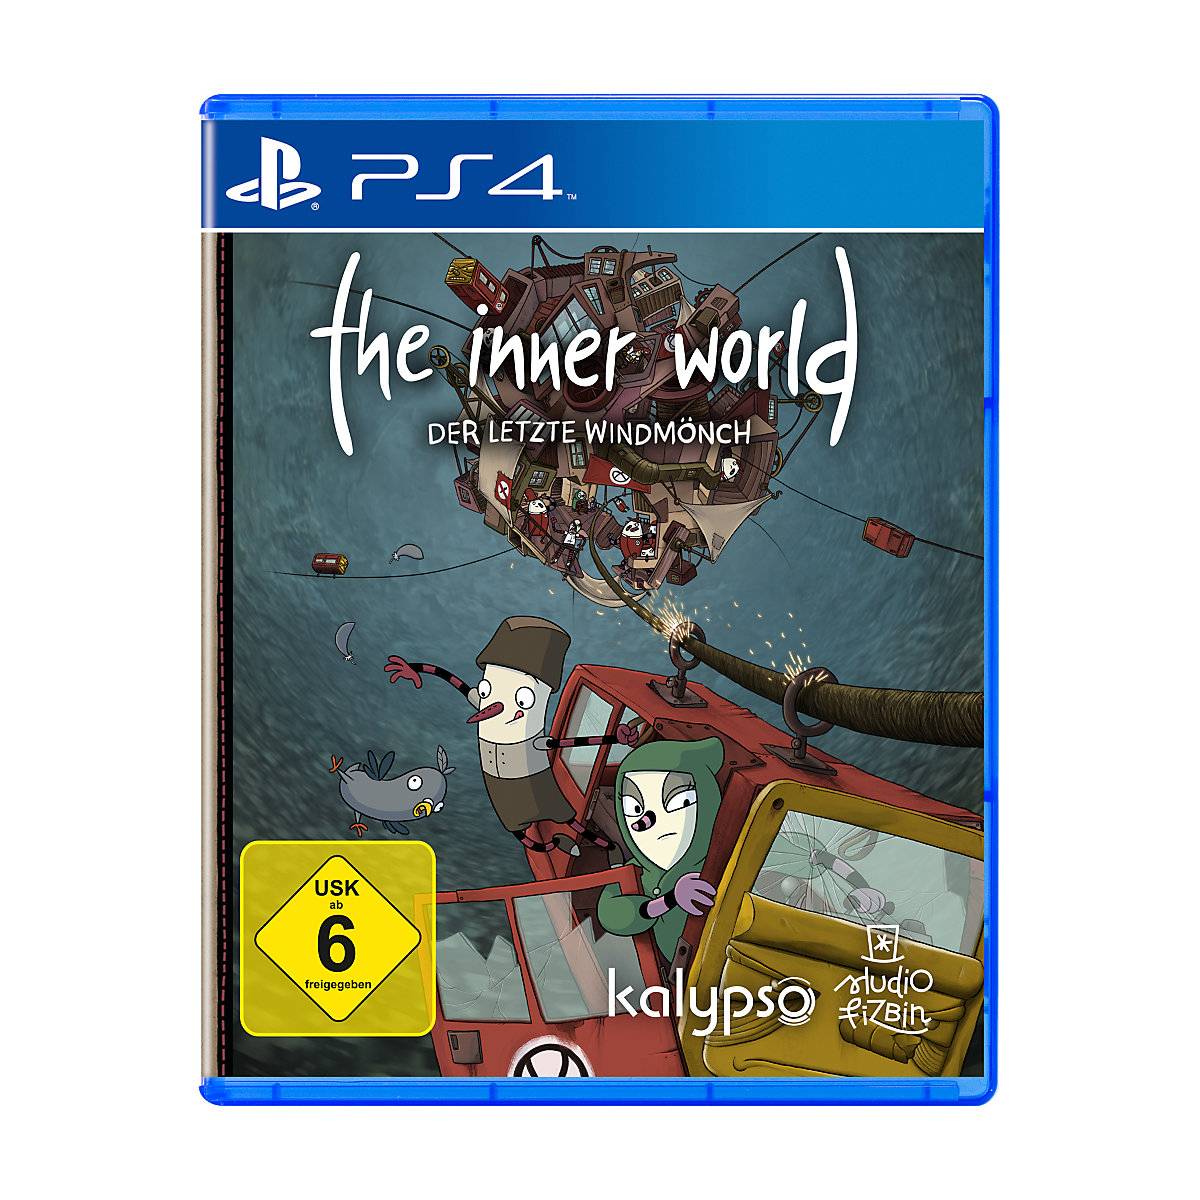 PS4 The Inner World Der letzte Windmönch